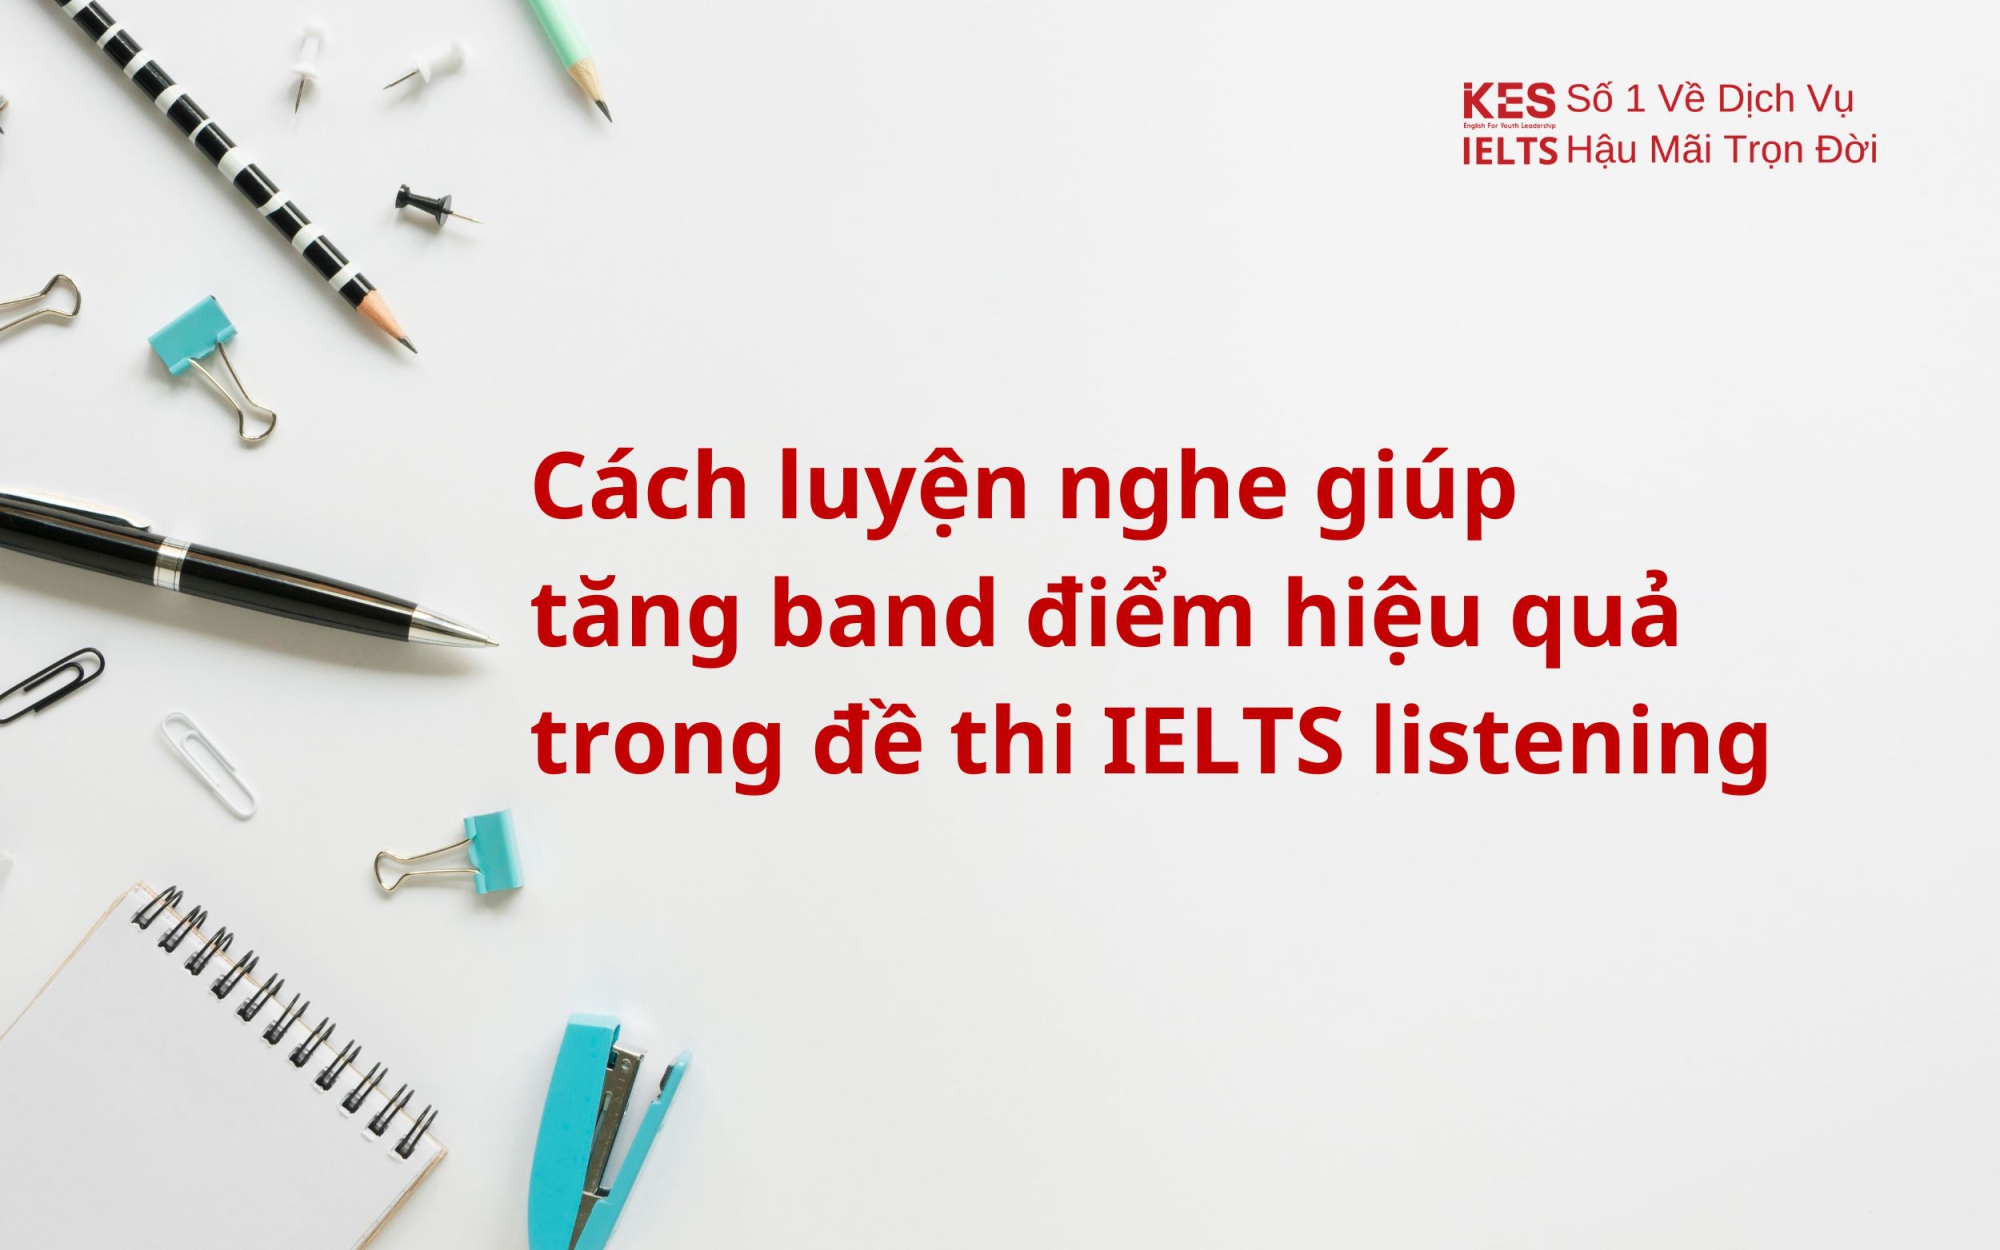 Cách luyện nghe giúp tăng band điểm hiệu quả trong đề thi IELTS listening